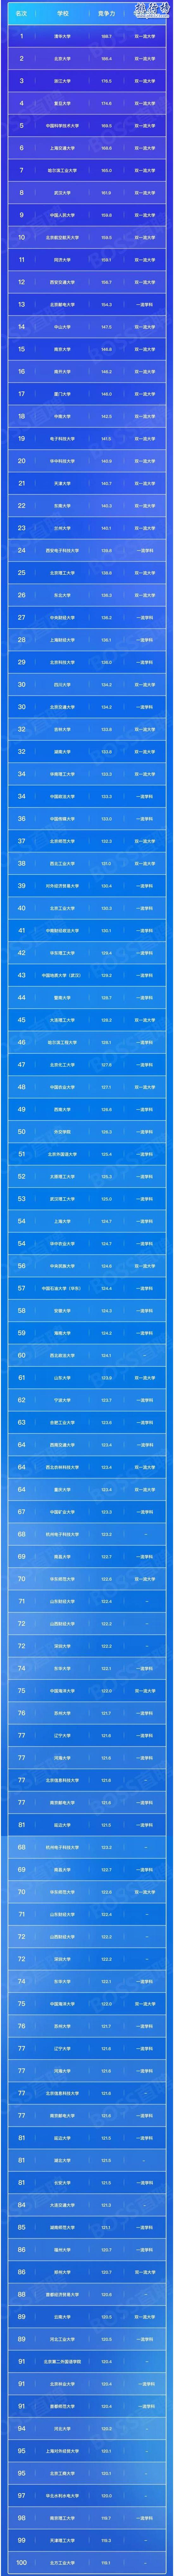 2017年高校畢業生就業競爭力100強,北大清華浙大居前三(完整榜單)